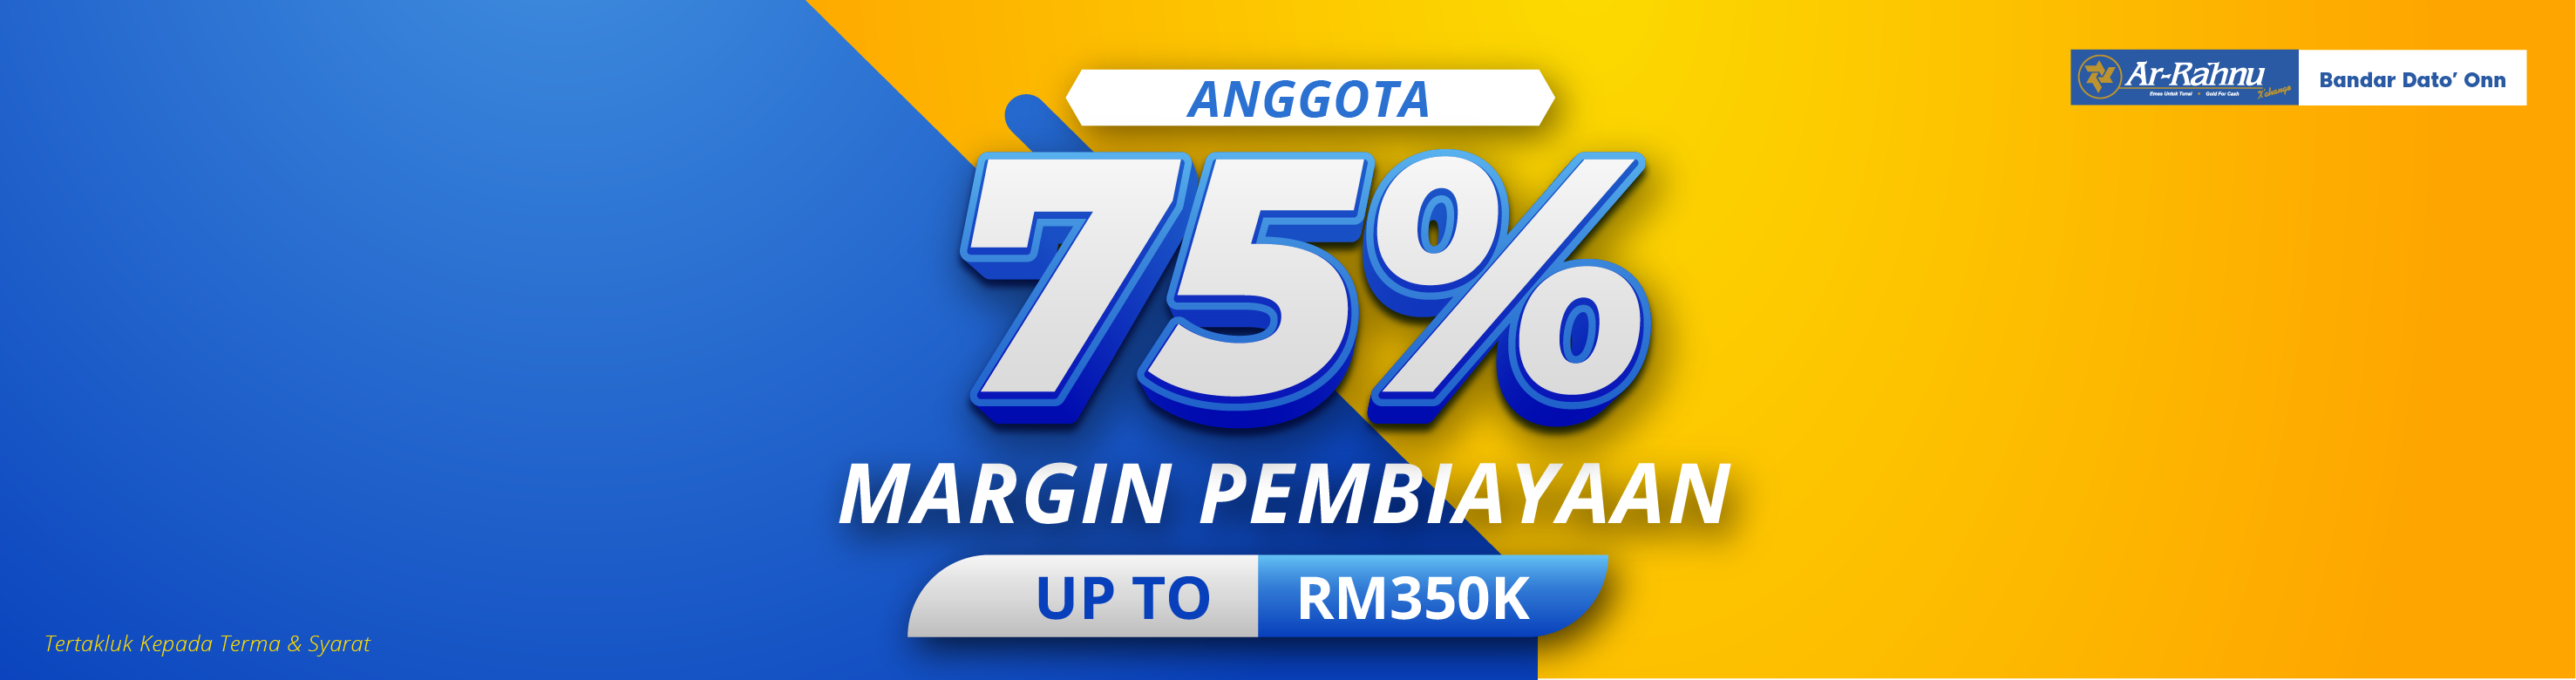 ARX Ads - 75% Margin Pembiayaan